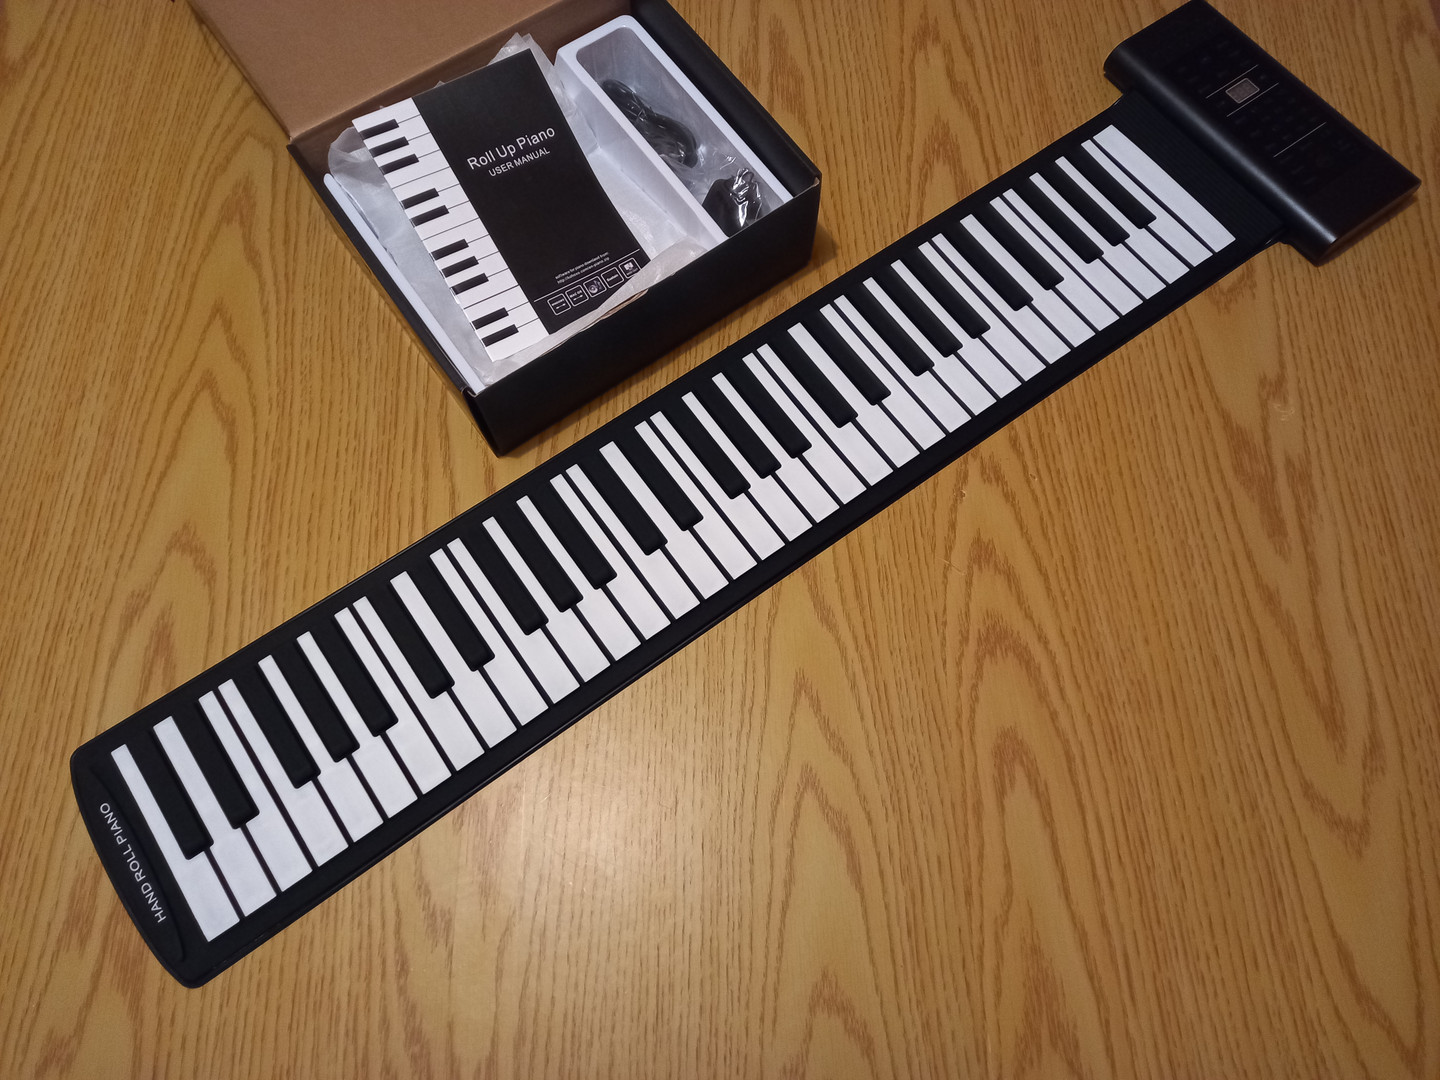 instrumentos musicales - NUEVO Piano Teclado electrónico plegable 5 octavas.
